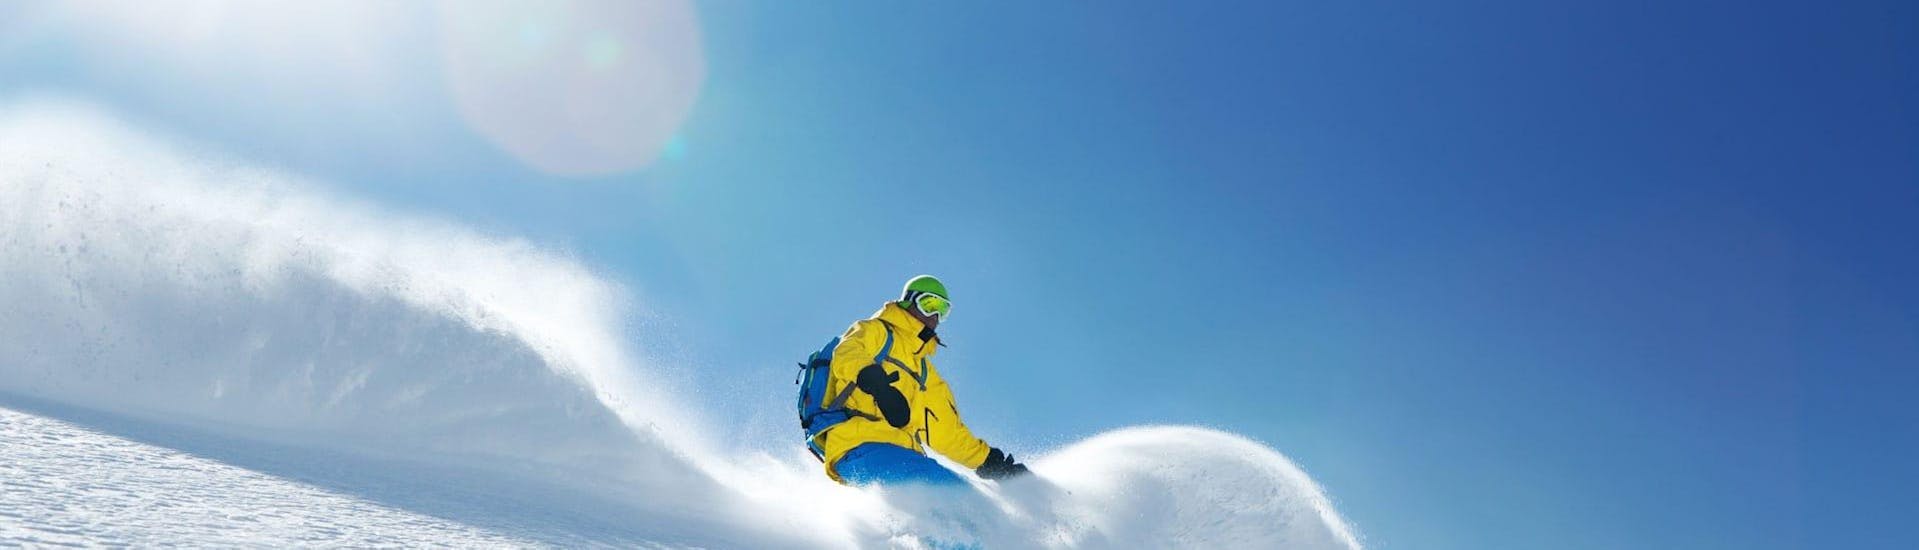 Privé snowboardlessen voor kinderen en volwassenen van alle niveaus in Großarl met Skischule Toni Gruber.